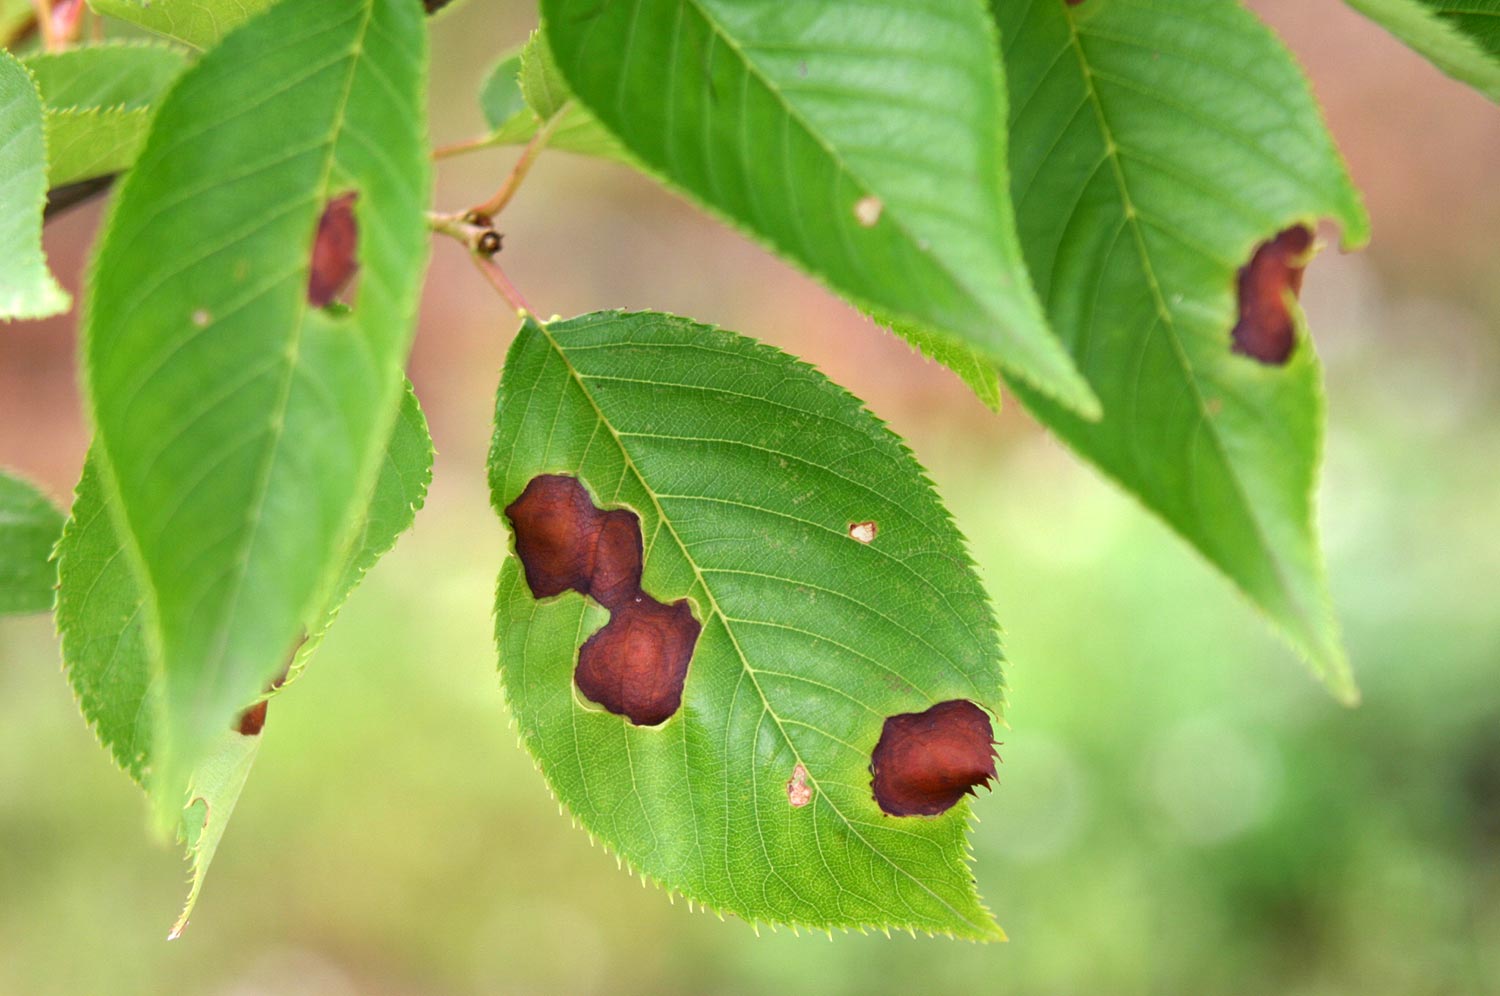 葉に褐色の斑点 まだら模様 ウメ 症状と対処方法 樹木診断 樹木診断と松くい虫被害対策 出雲市農林水産部森林政策課